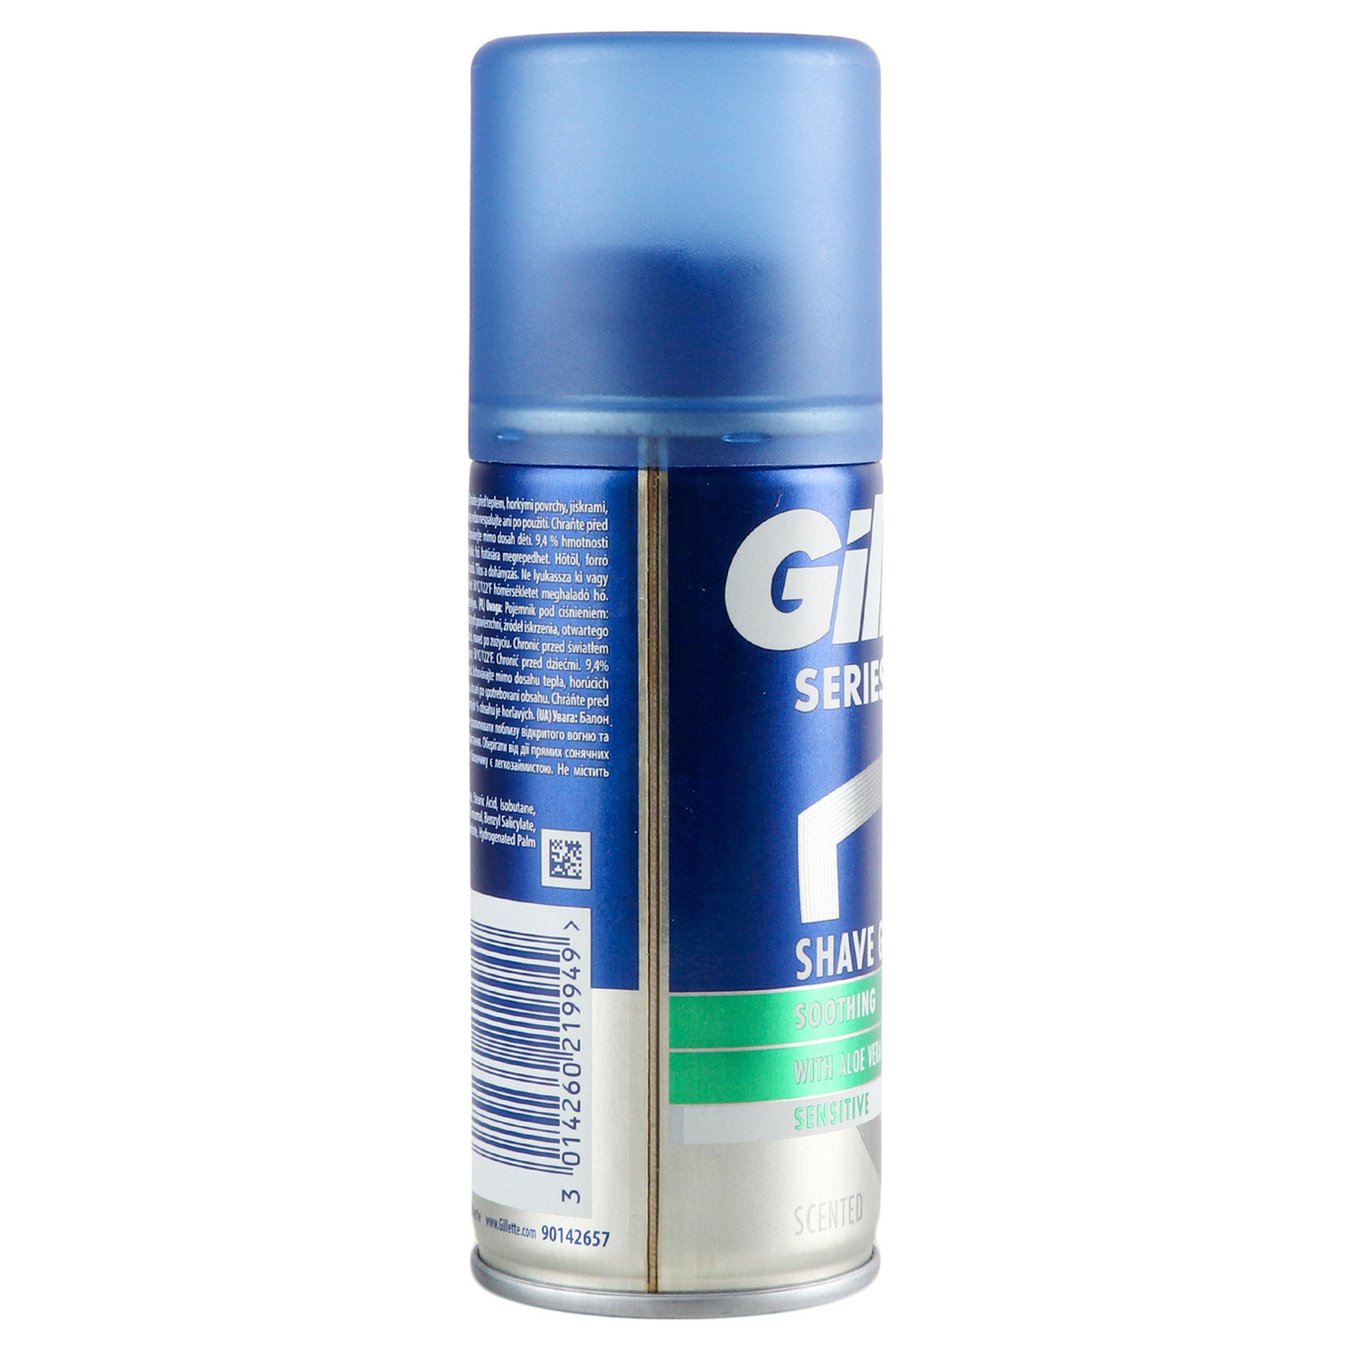 Gillette Series shaving gel for sensitive skin 75ml 3